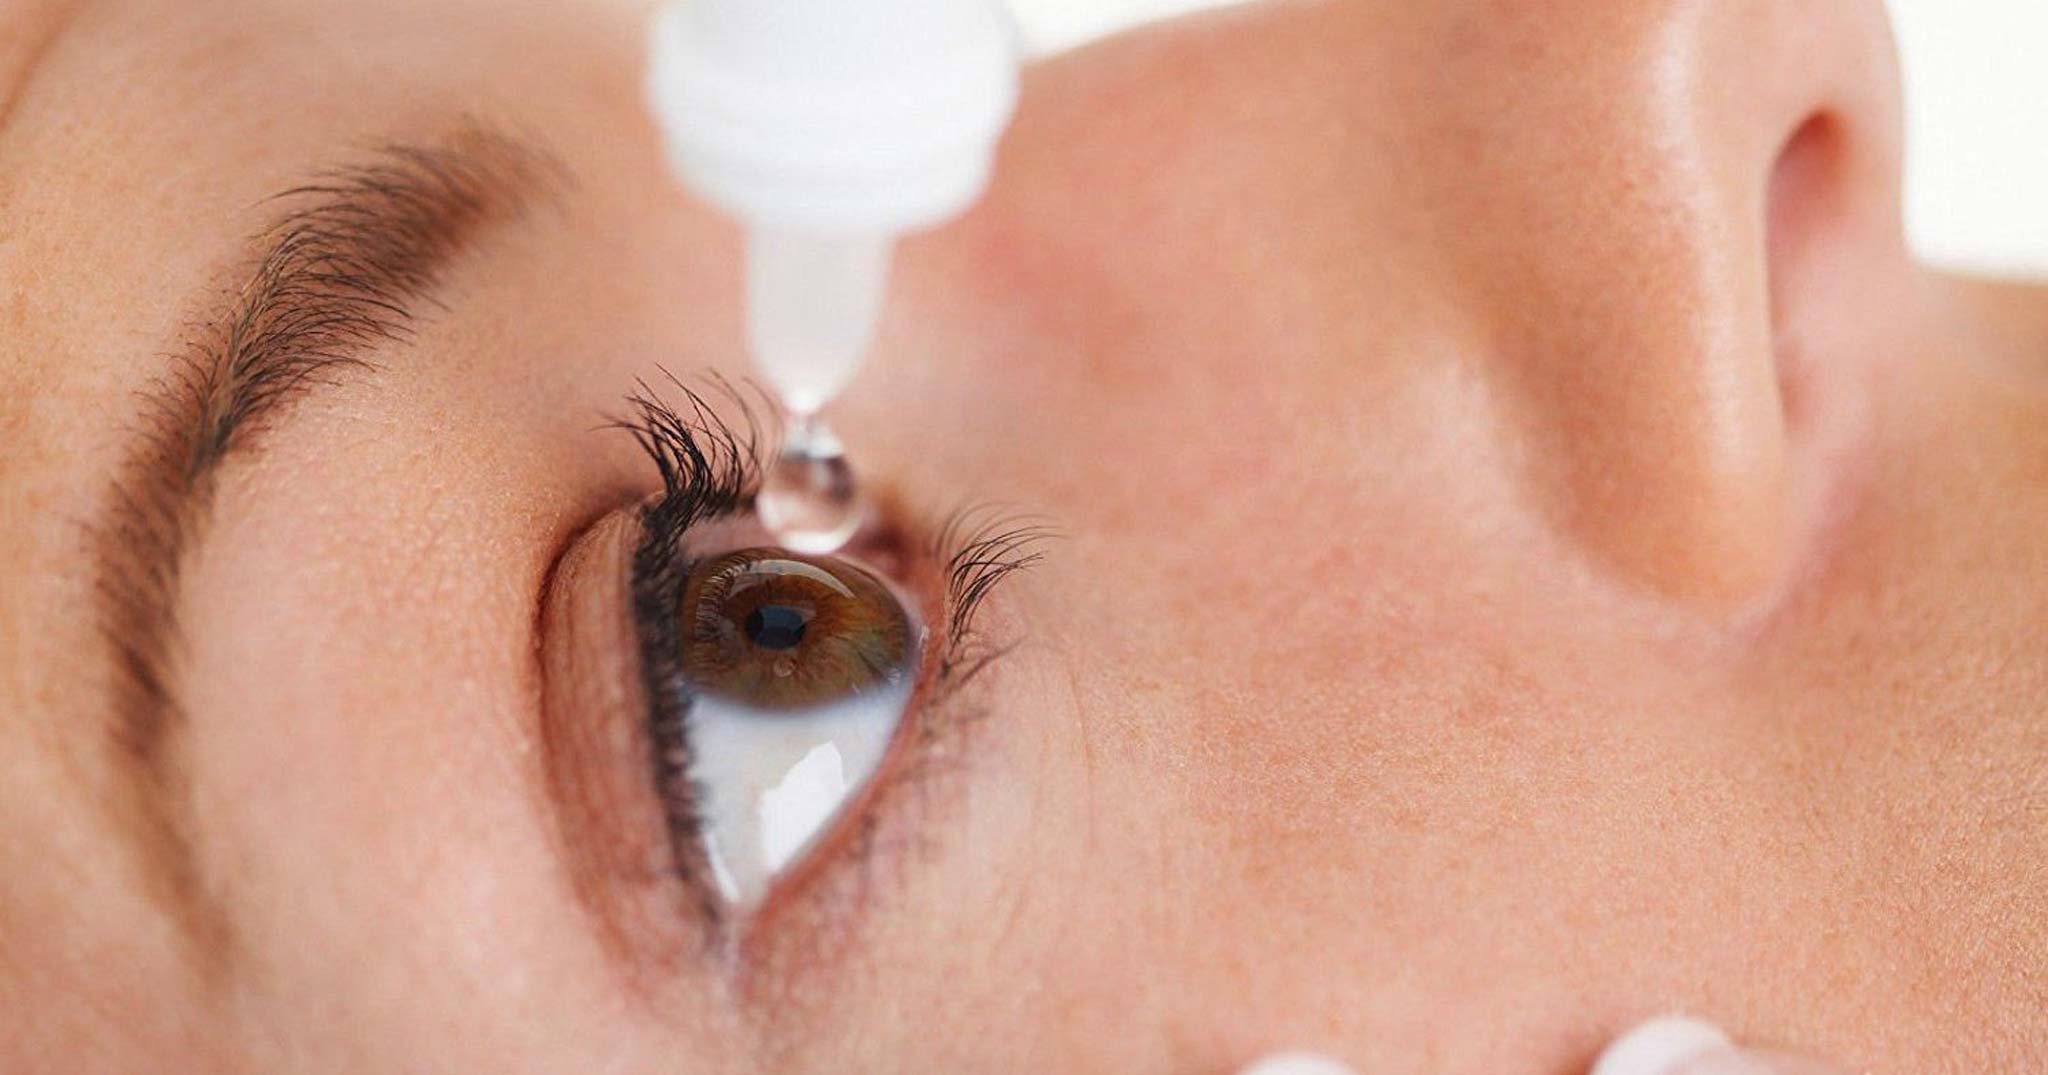 Đặc điểm nổi bật và ưu điểm của Oflovid so với các loại kháng sinh mắt khác?
